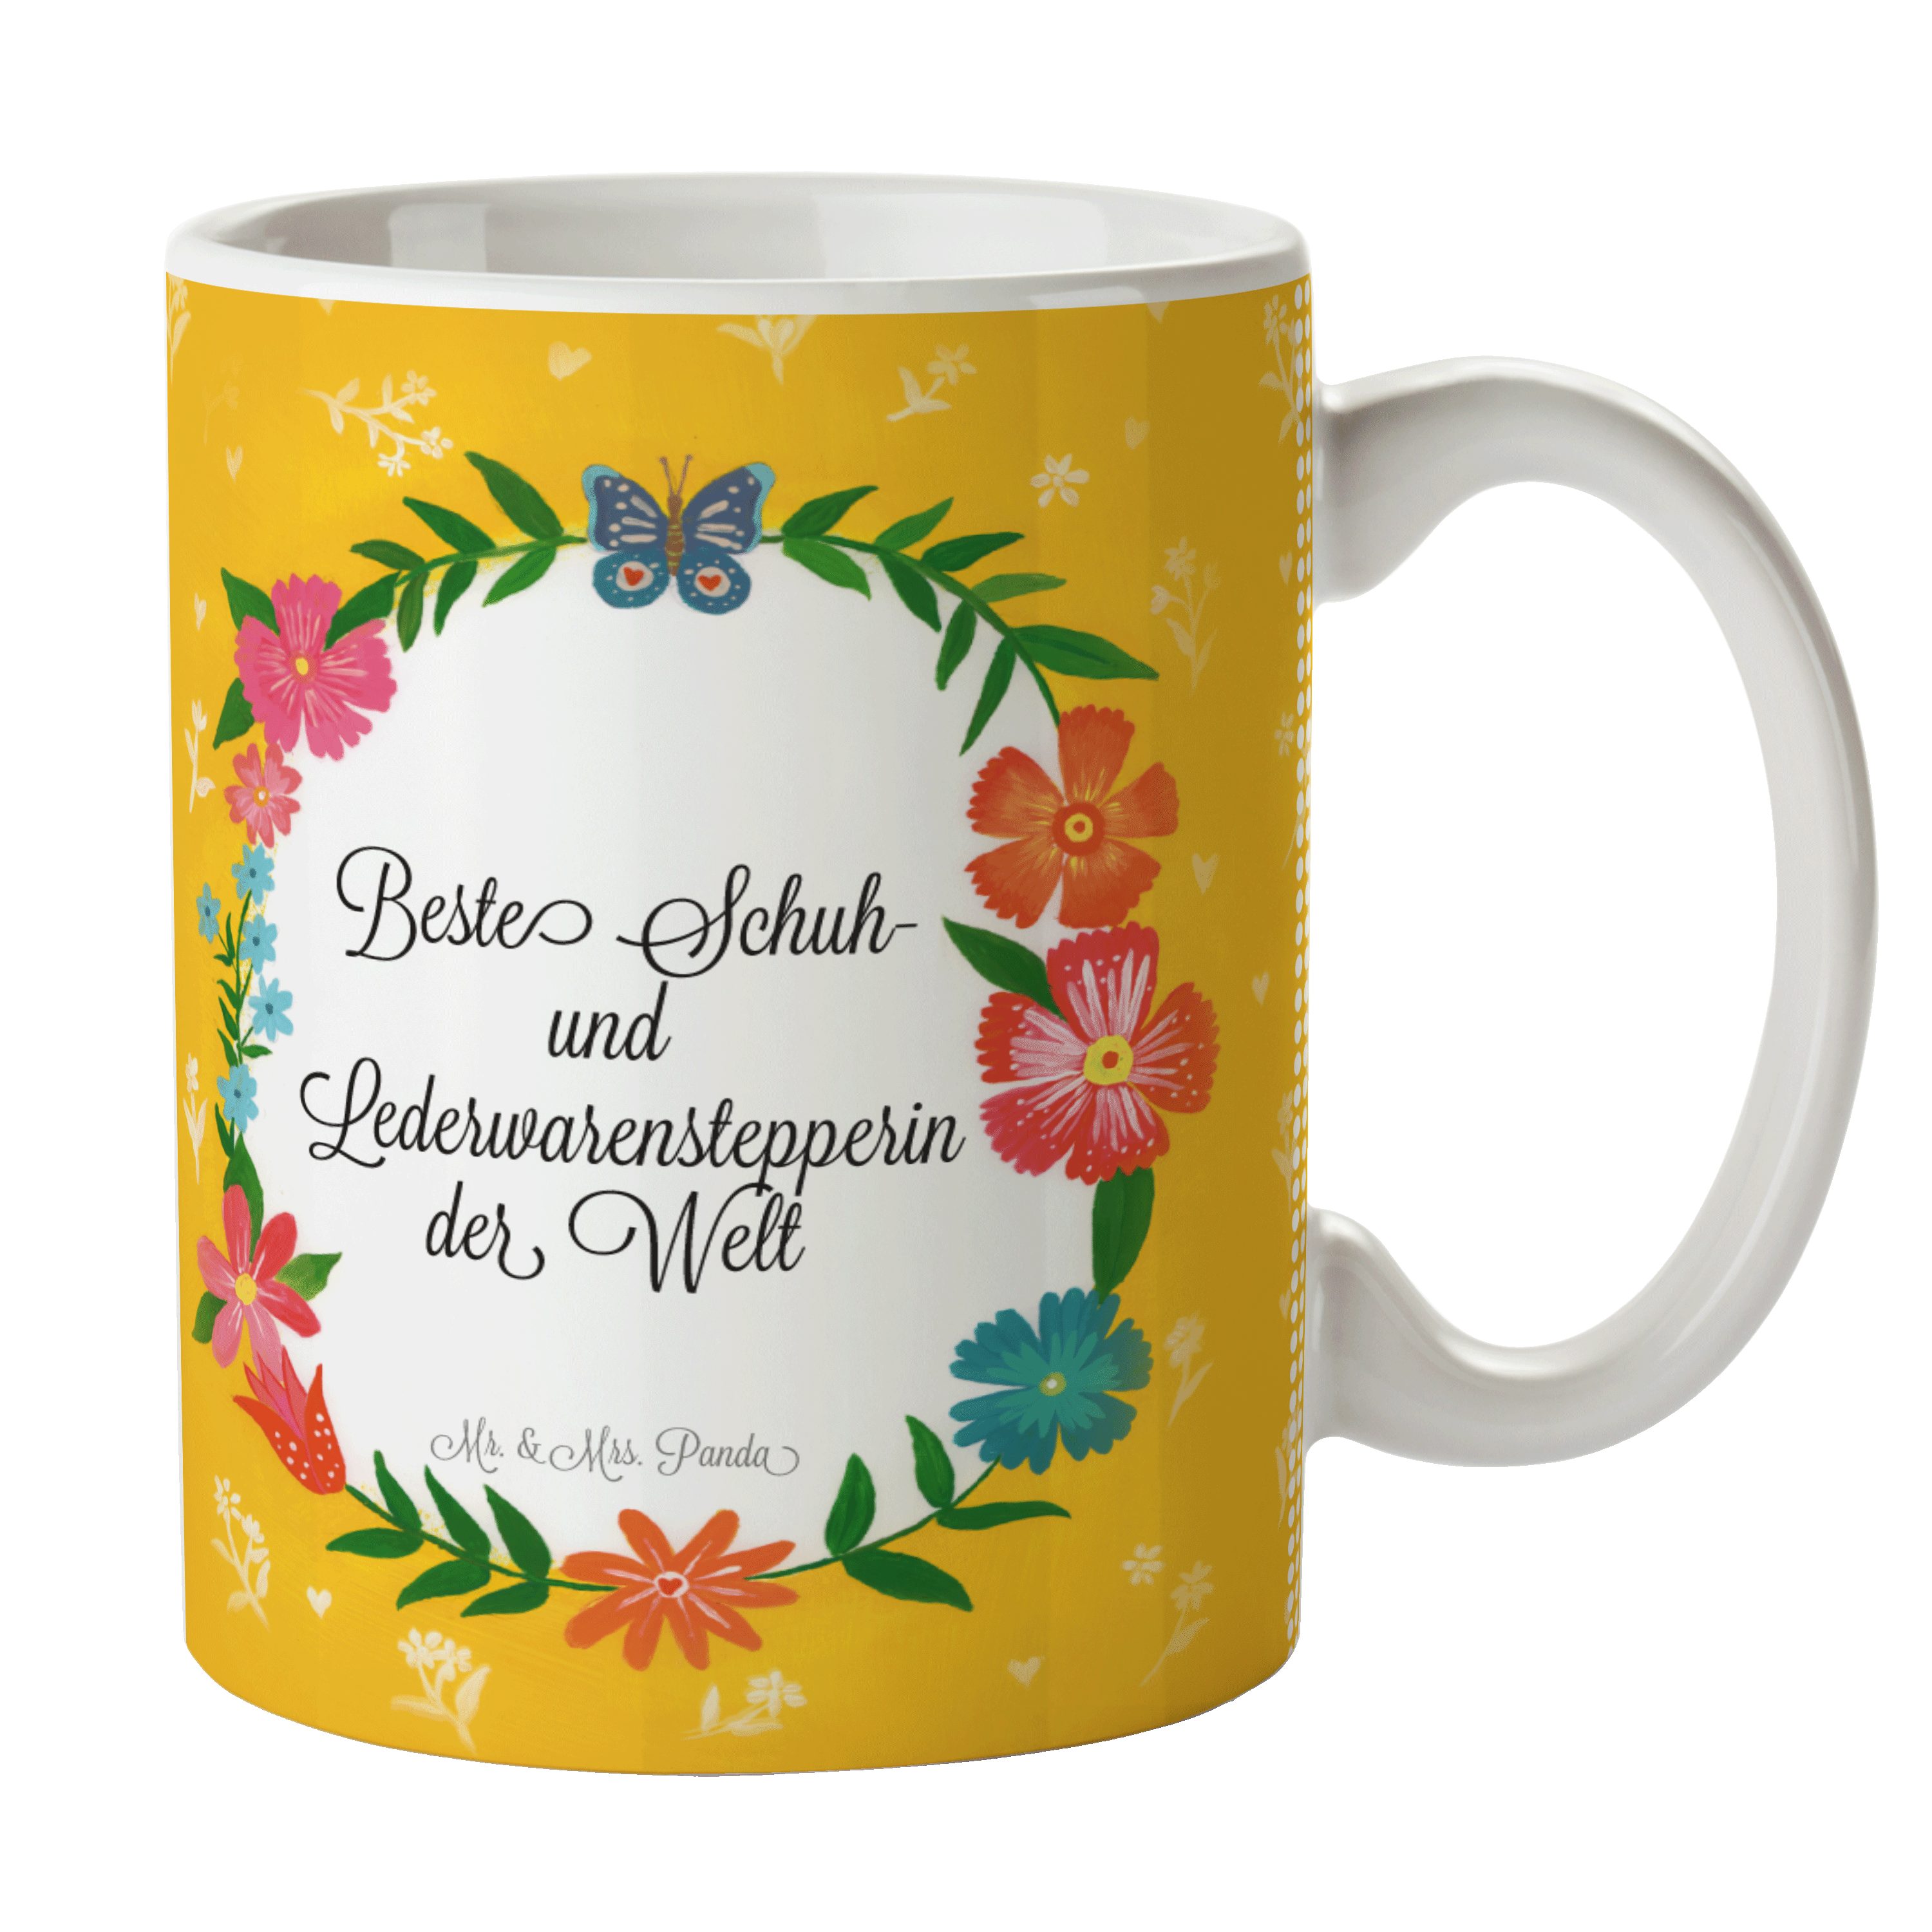 Keramik Kaffeetasse, - Tasse Geschenk, Schenken, Lederwarenstepperin Panda & Mr. Mrs. und Schuh- Tas,